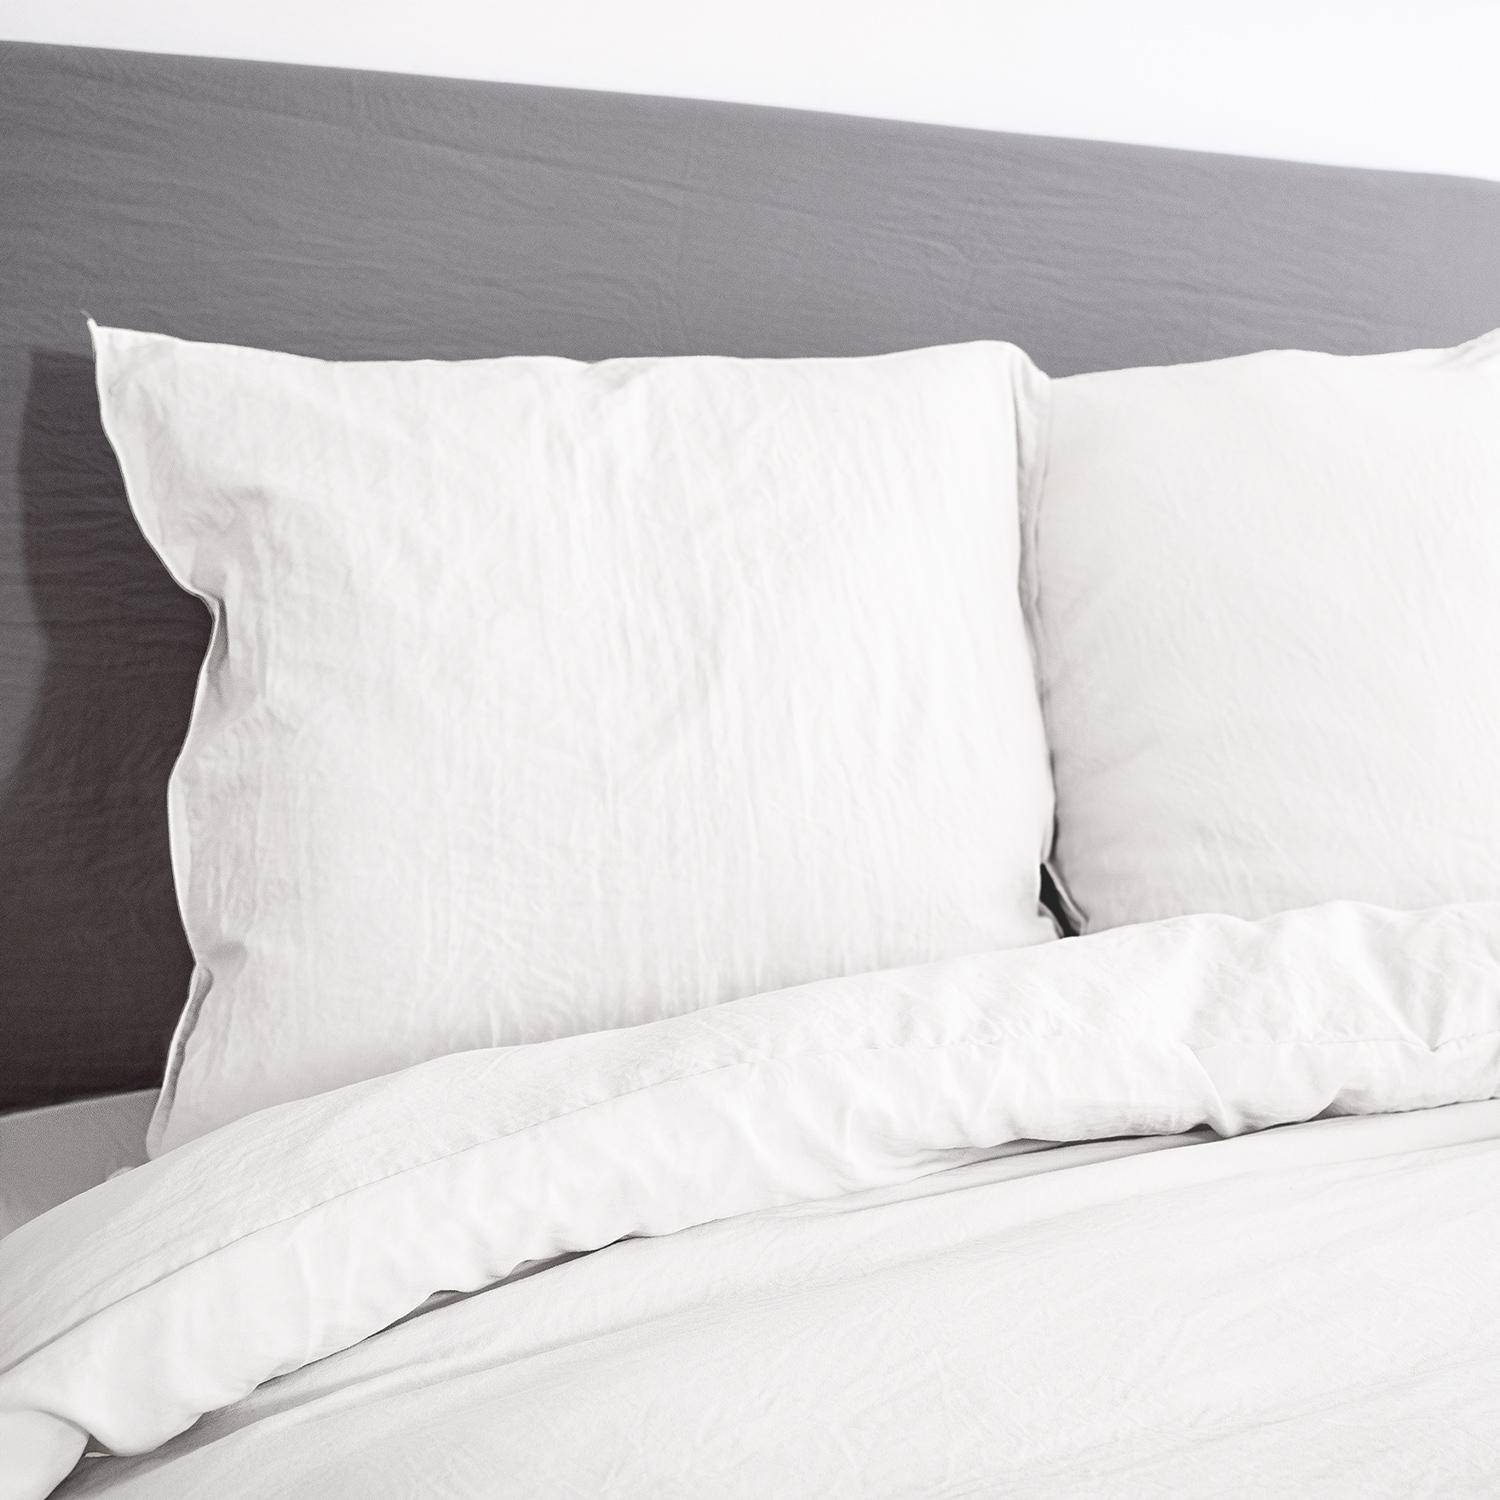 Bettwäsche-Set aus vorgewaschener Mikrofaser in weiß 260 x 240 cm für Doppelbetten, 1 Bettbezug und 2 Kissenbezüge Photo2